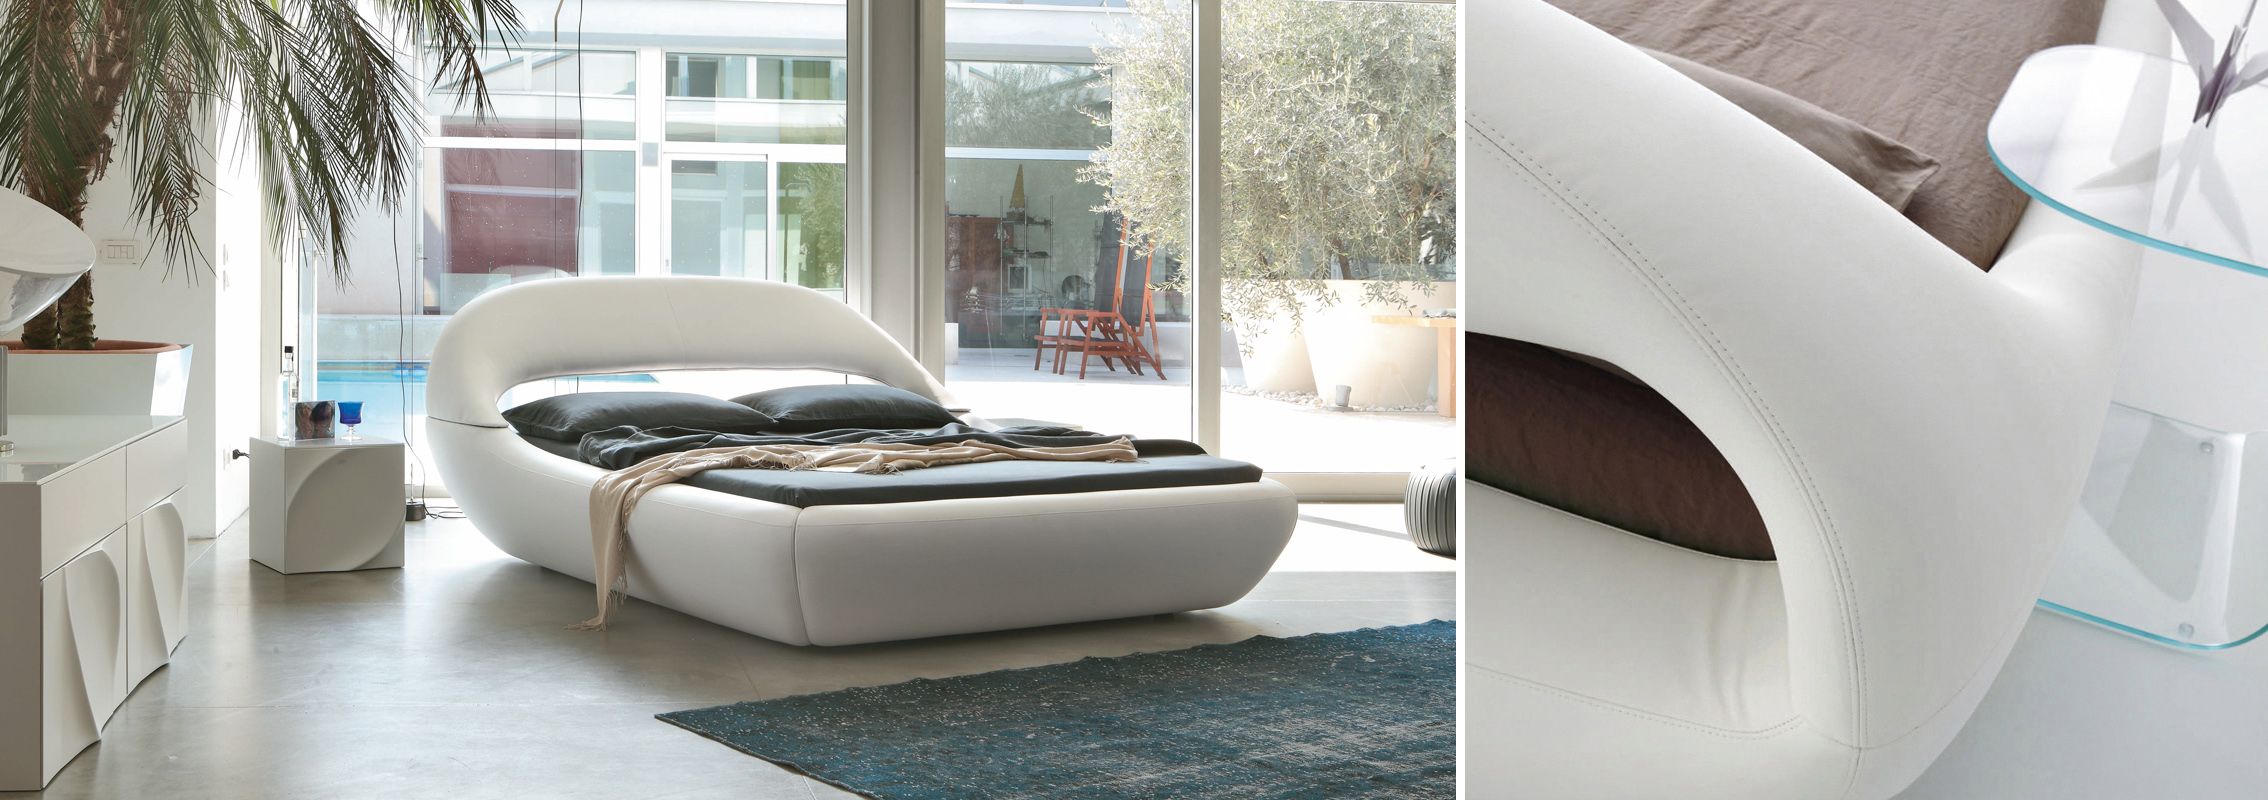 Un Sofá Cama con un Diseño Muy Futurista - Uxban